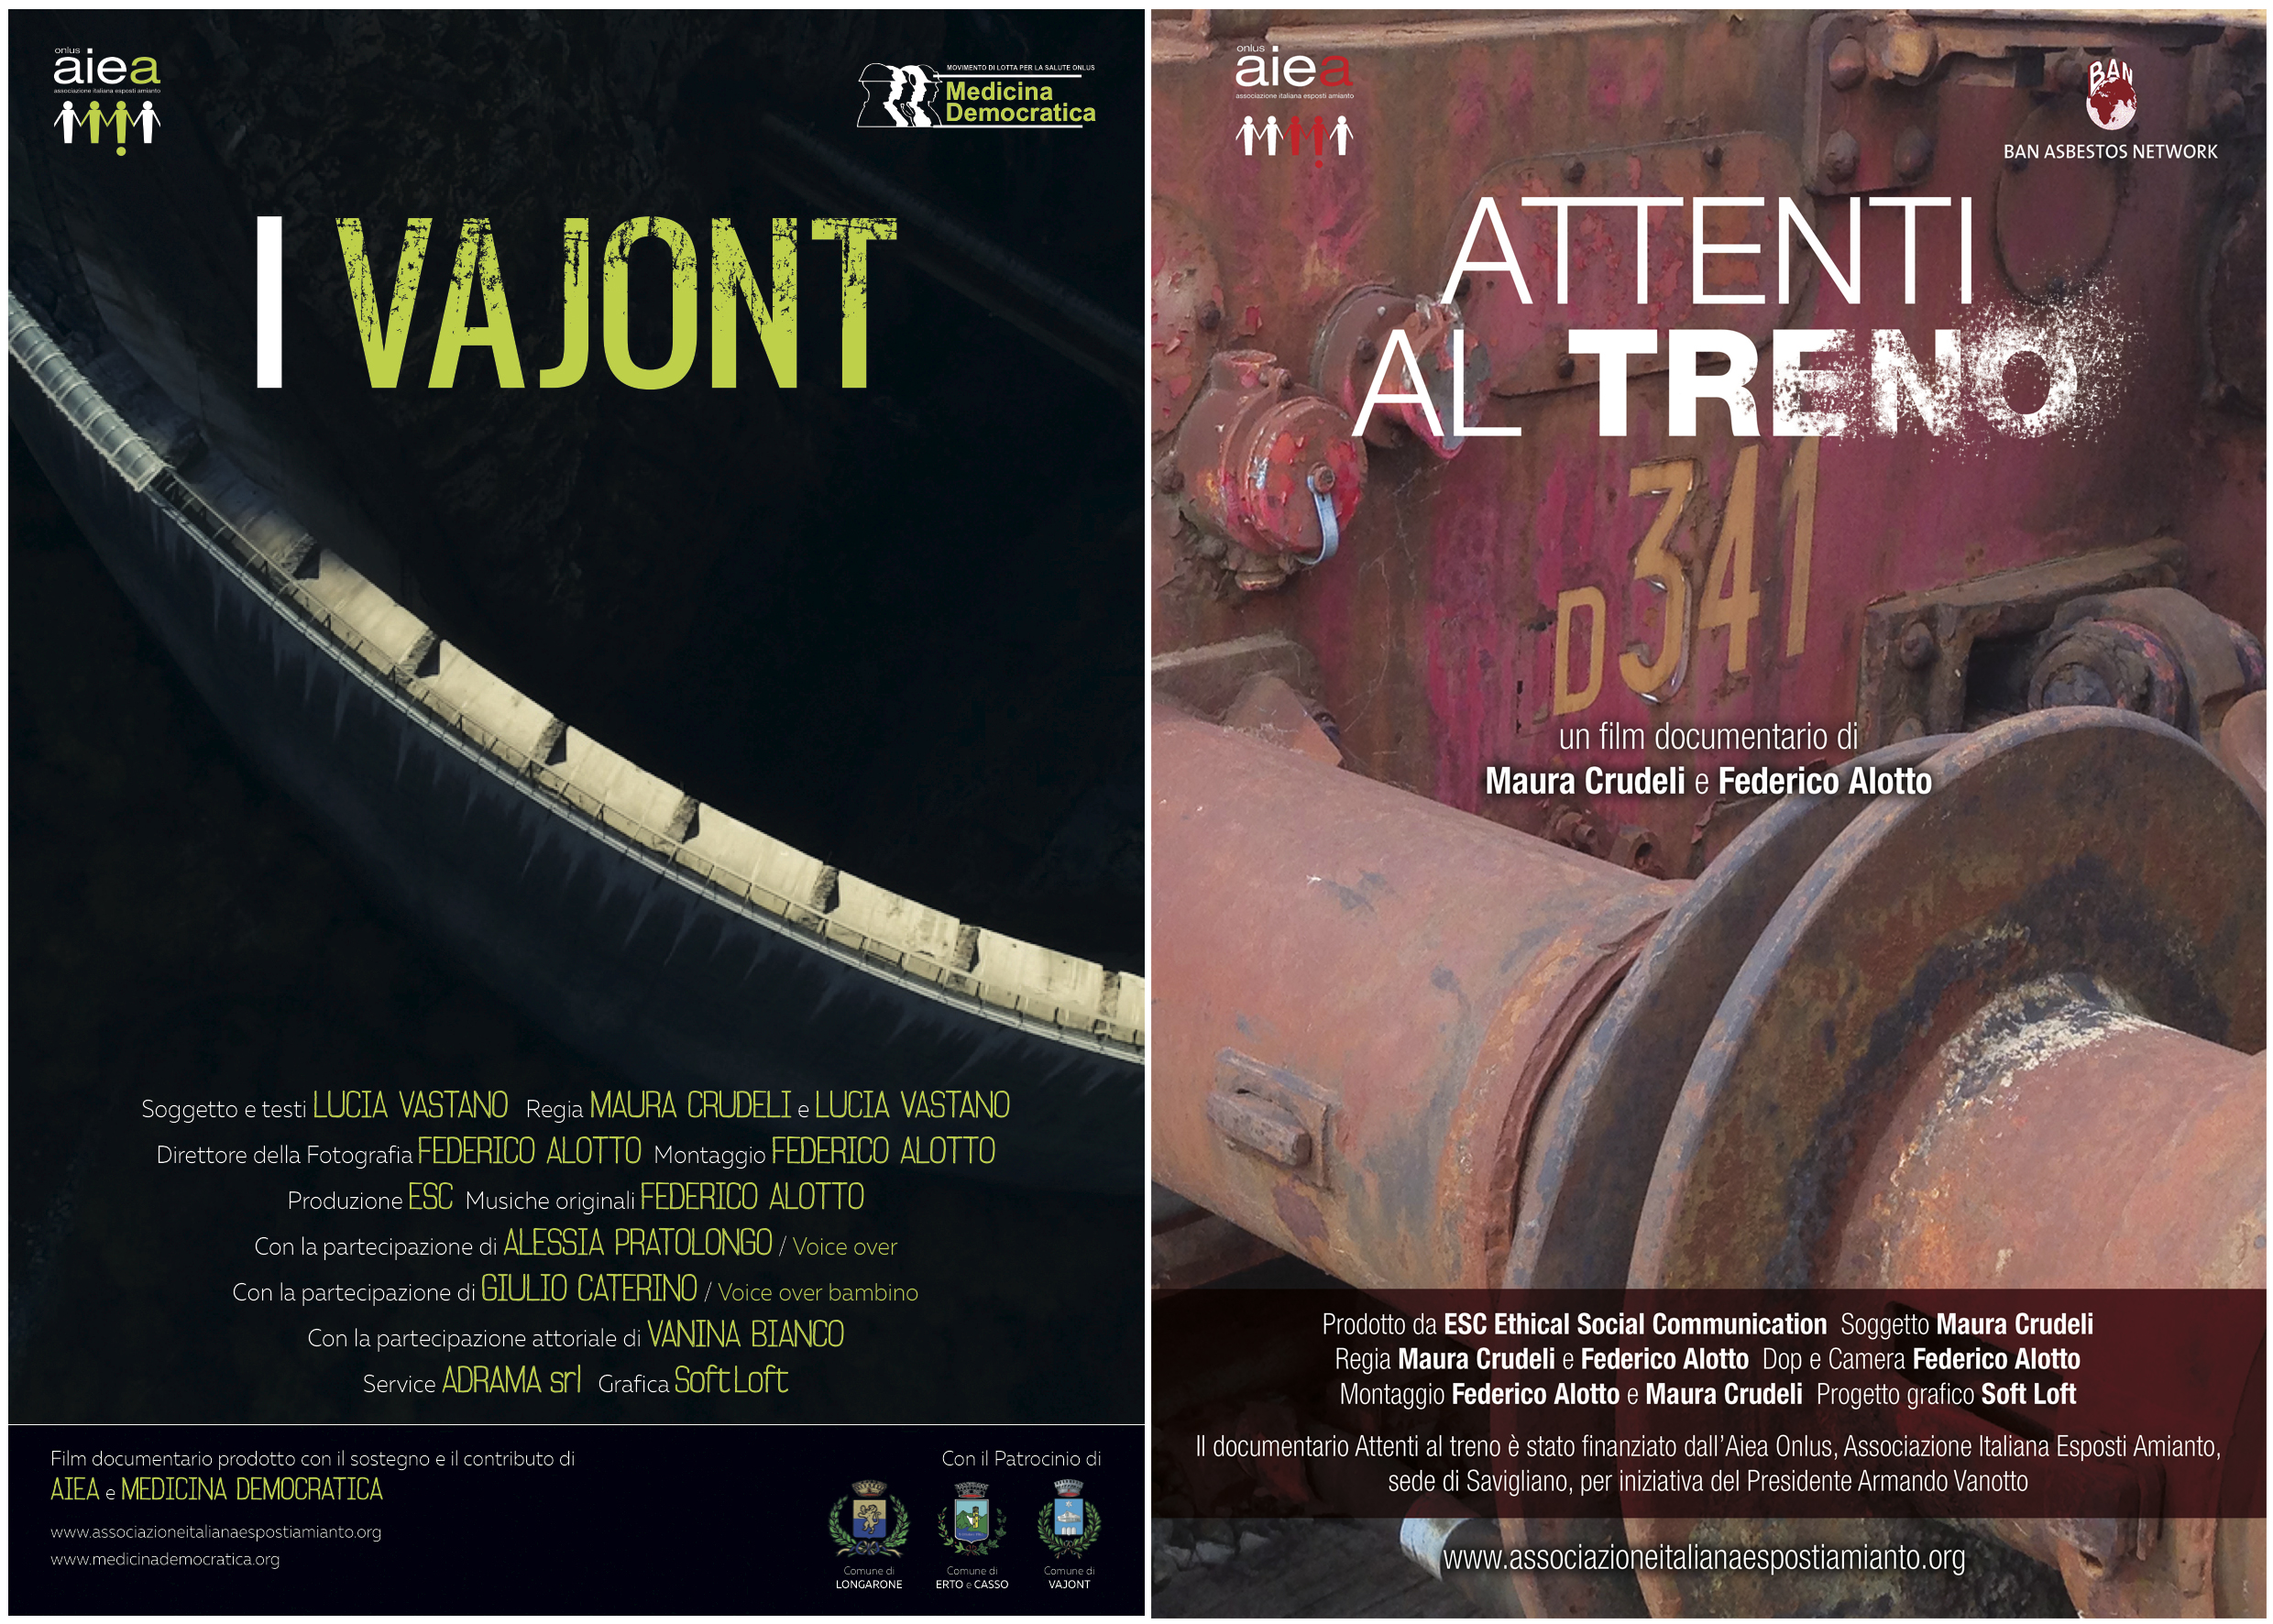 I Vajont e Attenti al Treno verranno proiettati a Torino nell'ambito della rassegna cinema ambiente presso il Centro Studio Sereno Regis di torino: lunedì 30 maggio e il 6 giugno alle ore 20.45.